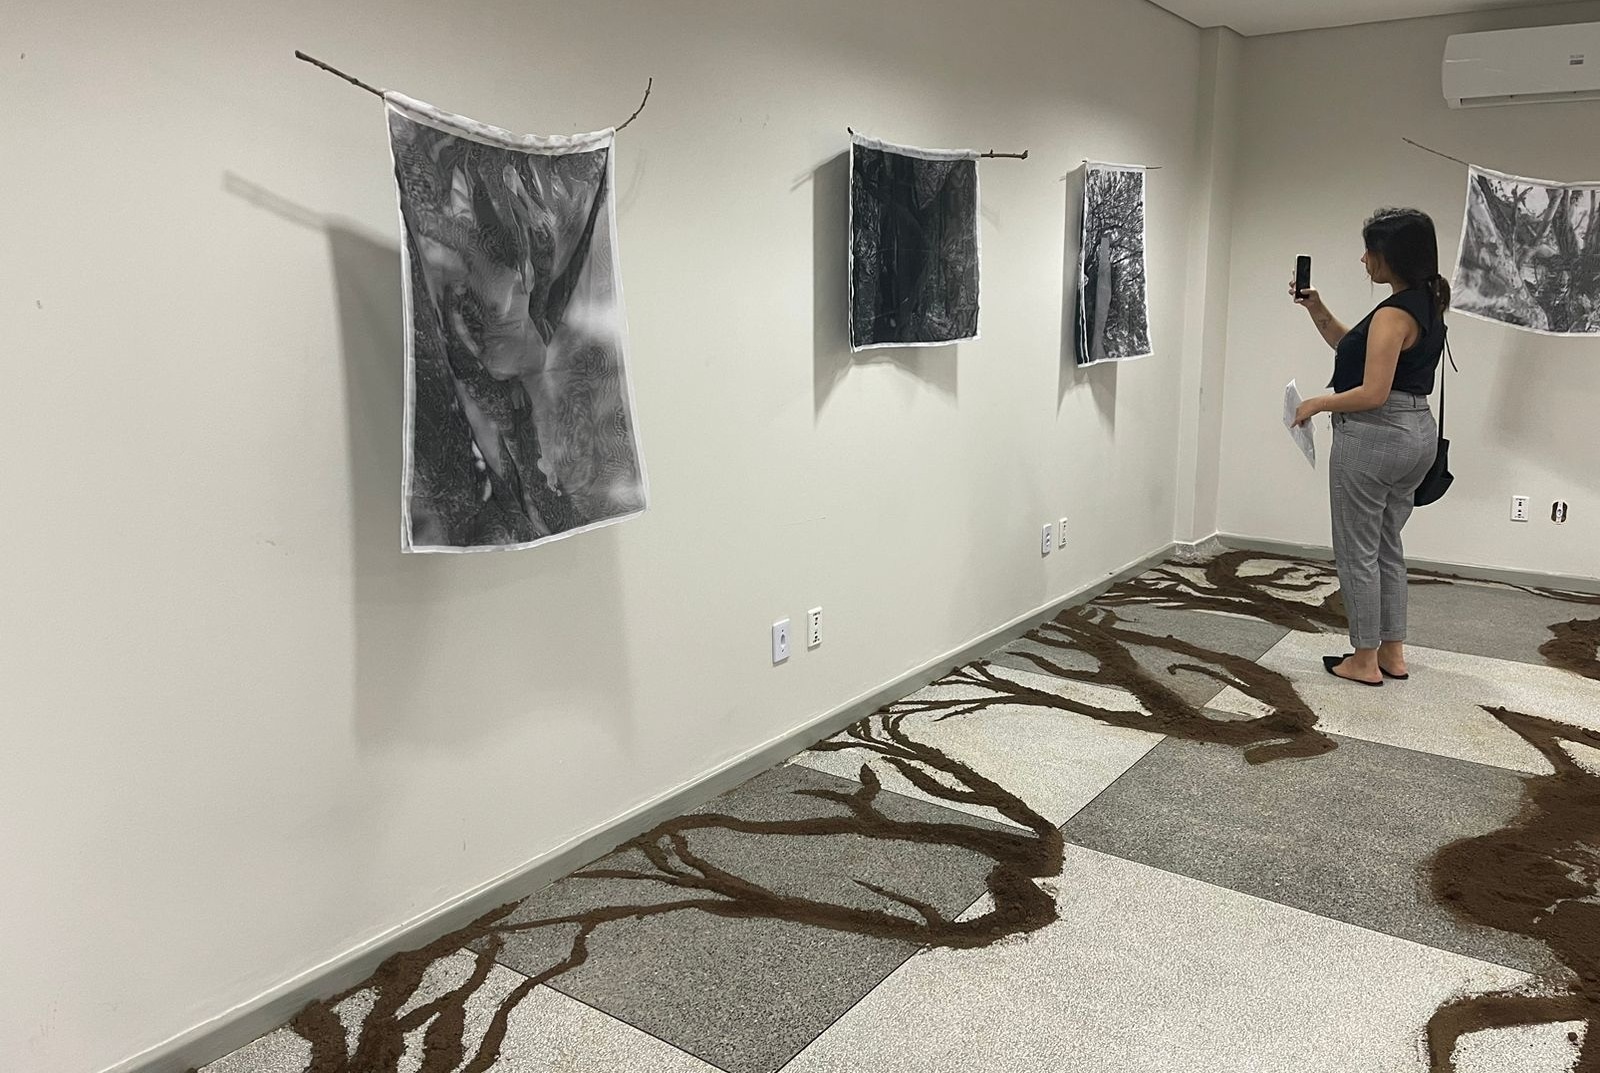  UNIR: Curso de Artes Visuais e exposição Corpo-Árvore em PVH na Semana Nacional de Museus